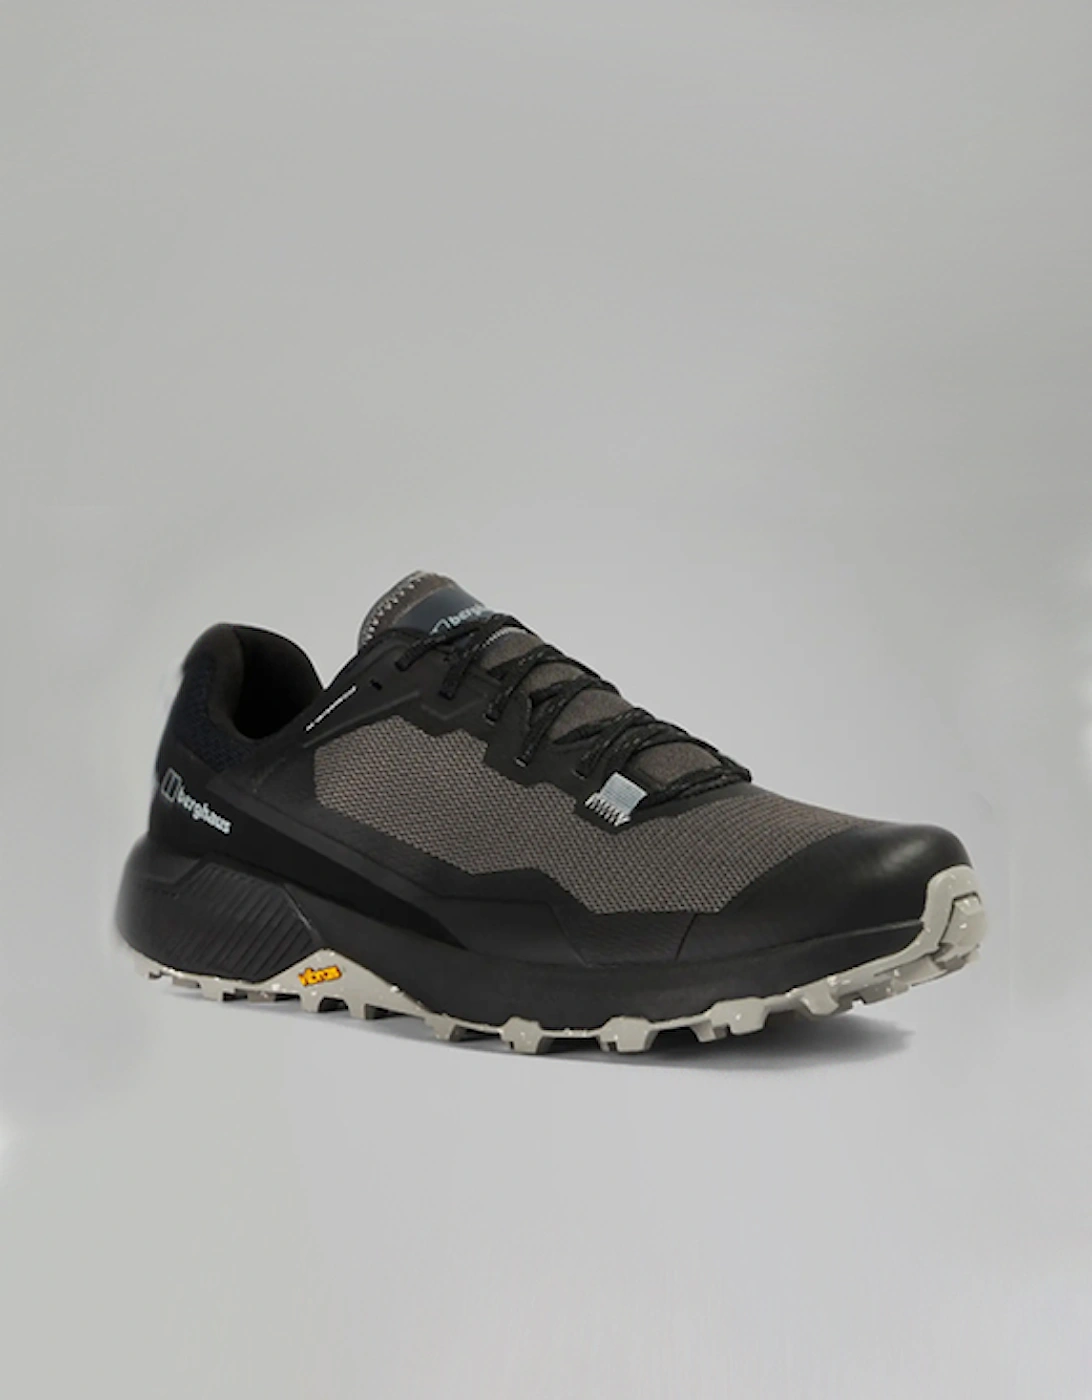 Men's Revolute Active Shoe Black/Dark Grey, 5 of 4